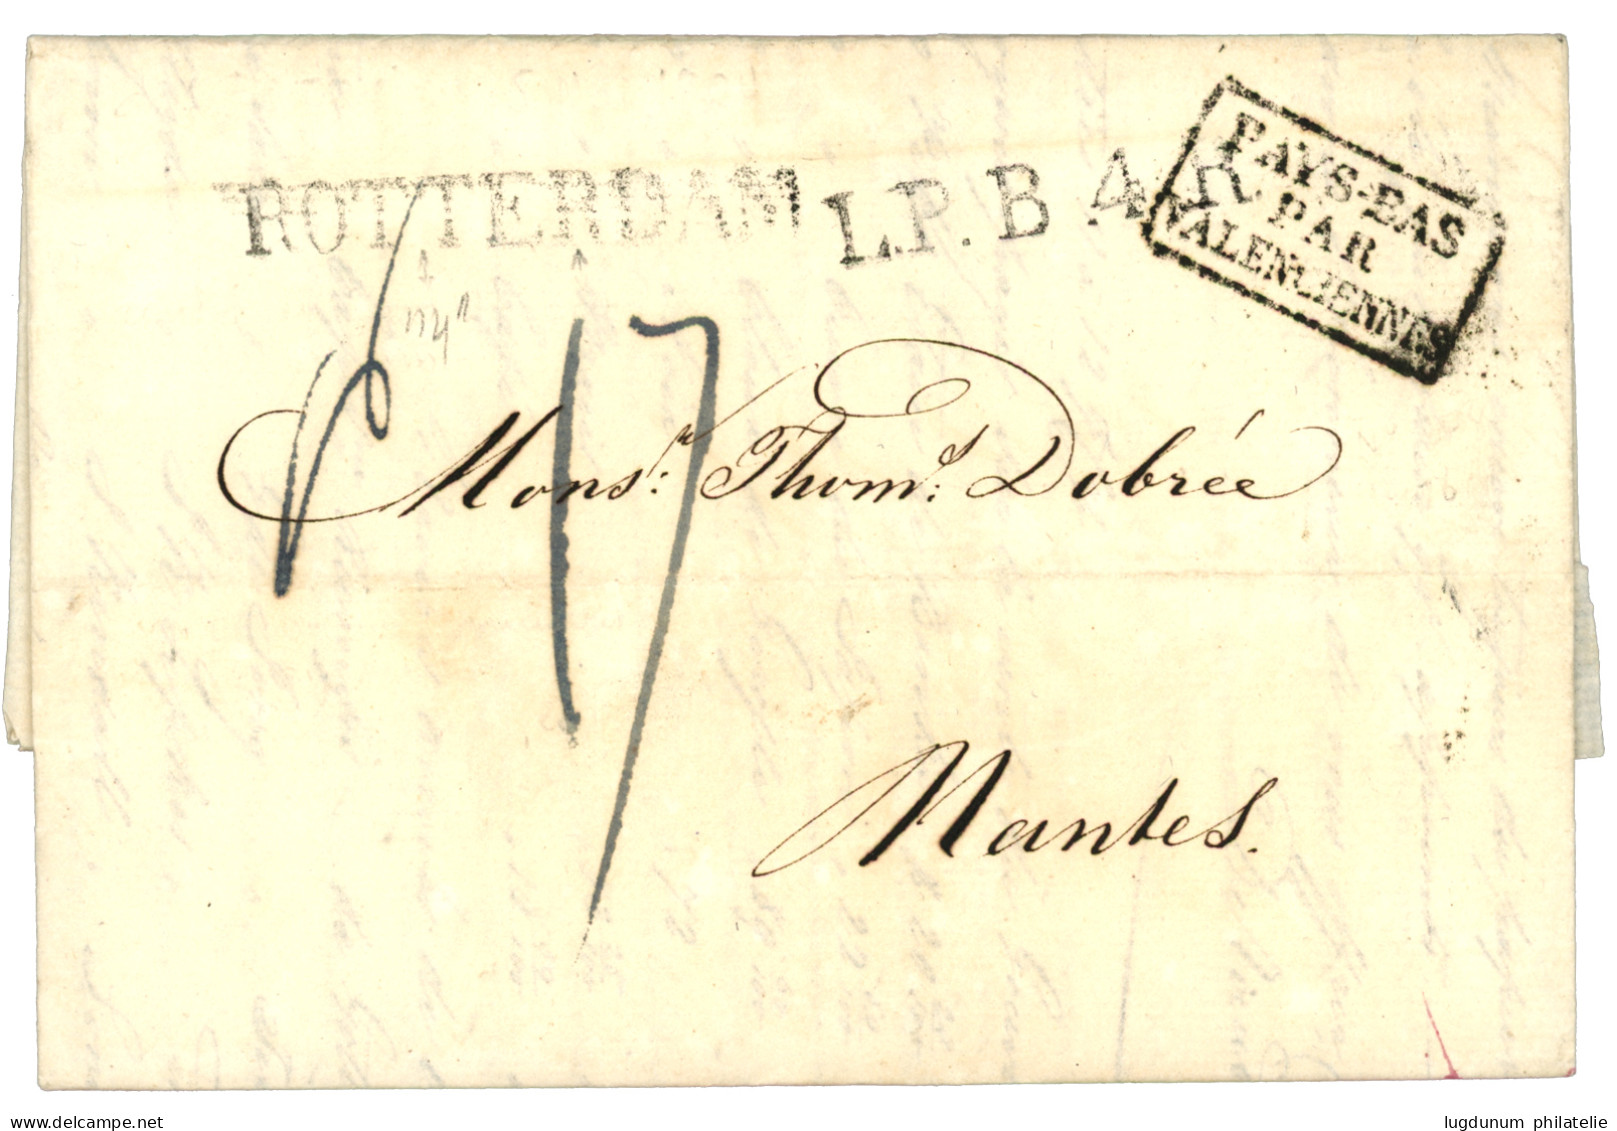 FORWARDING AGENT : 1824 Boxed PAYS BAS PAR VALENCIENNES + L.P.B.4 + ROTTERDAM On Entire Letter With Text Datelined "BATA - Indes Néerlandaises